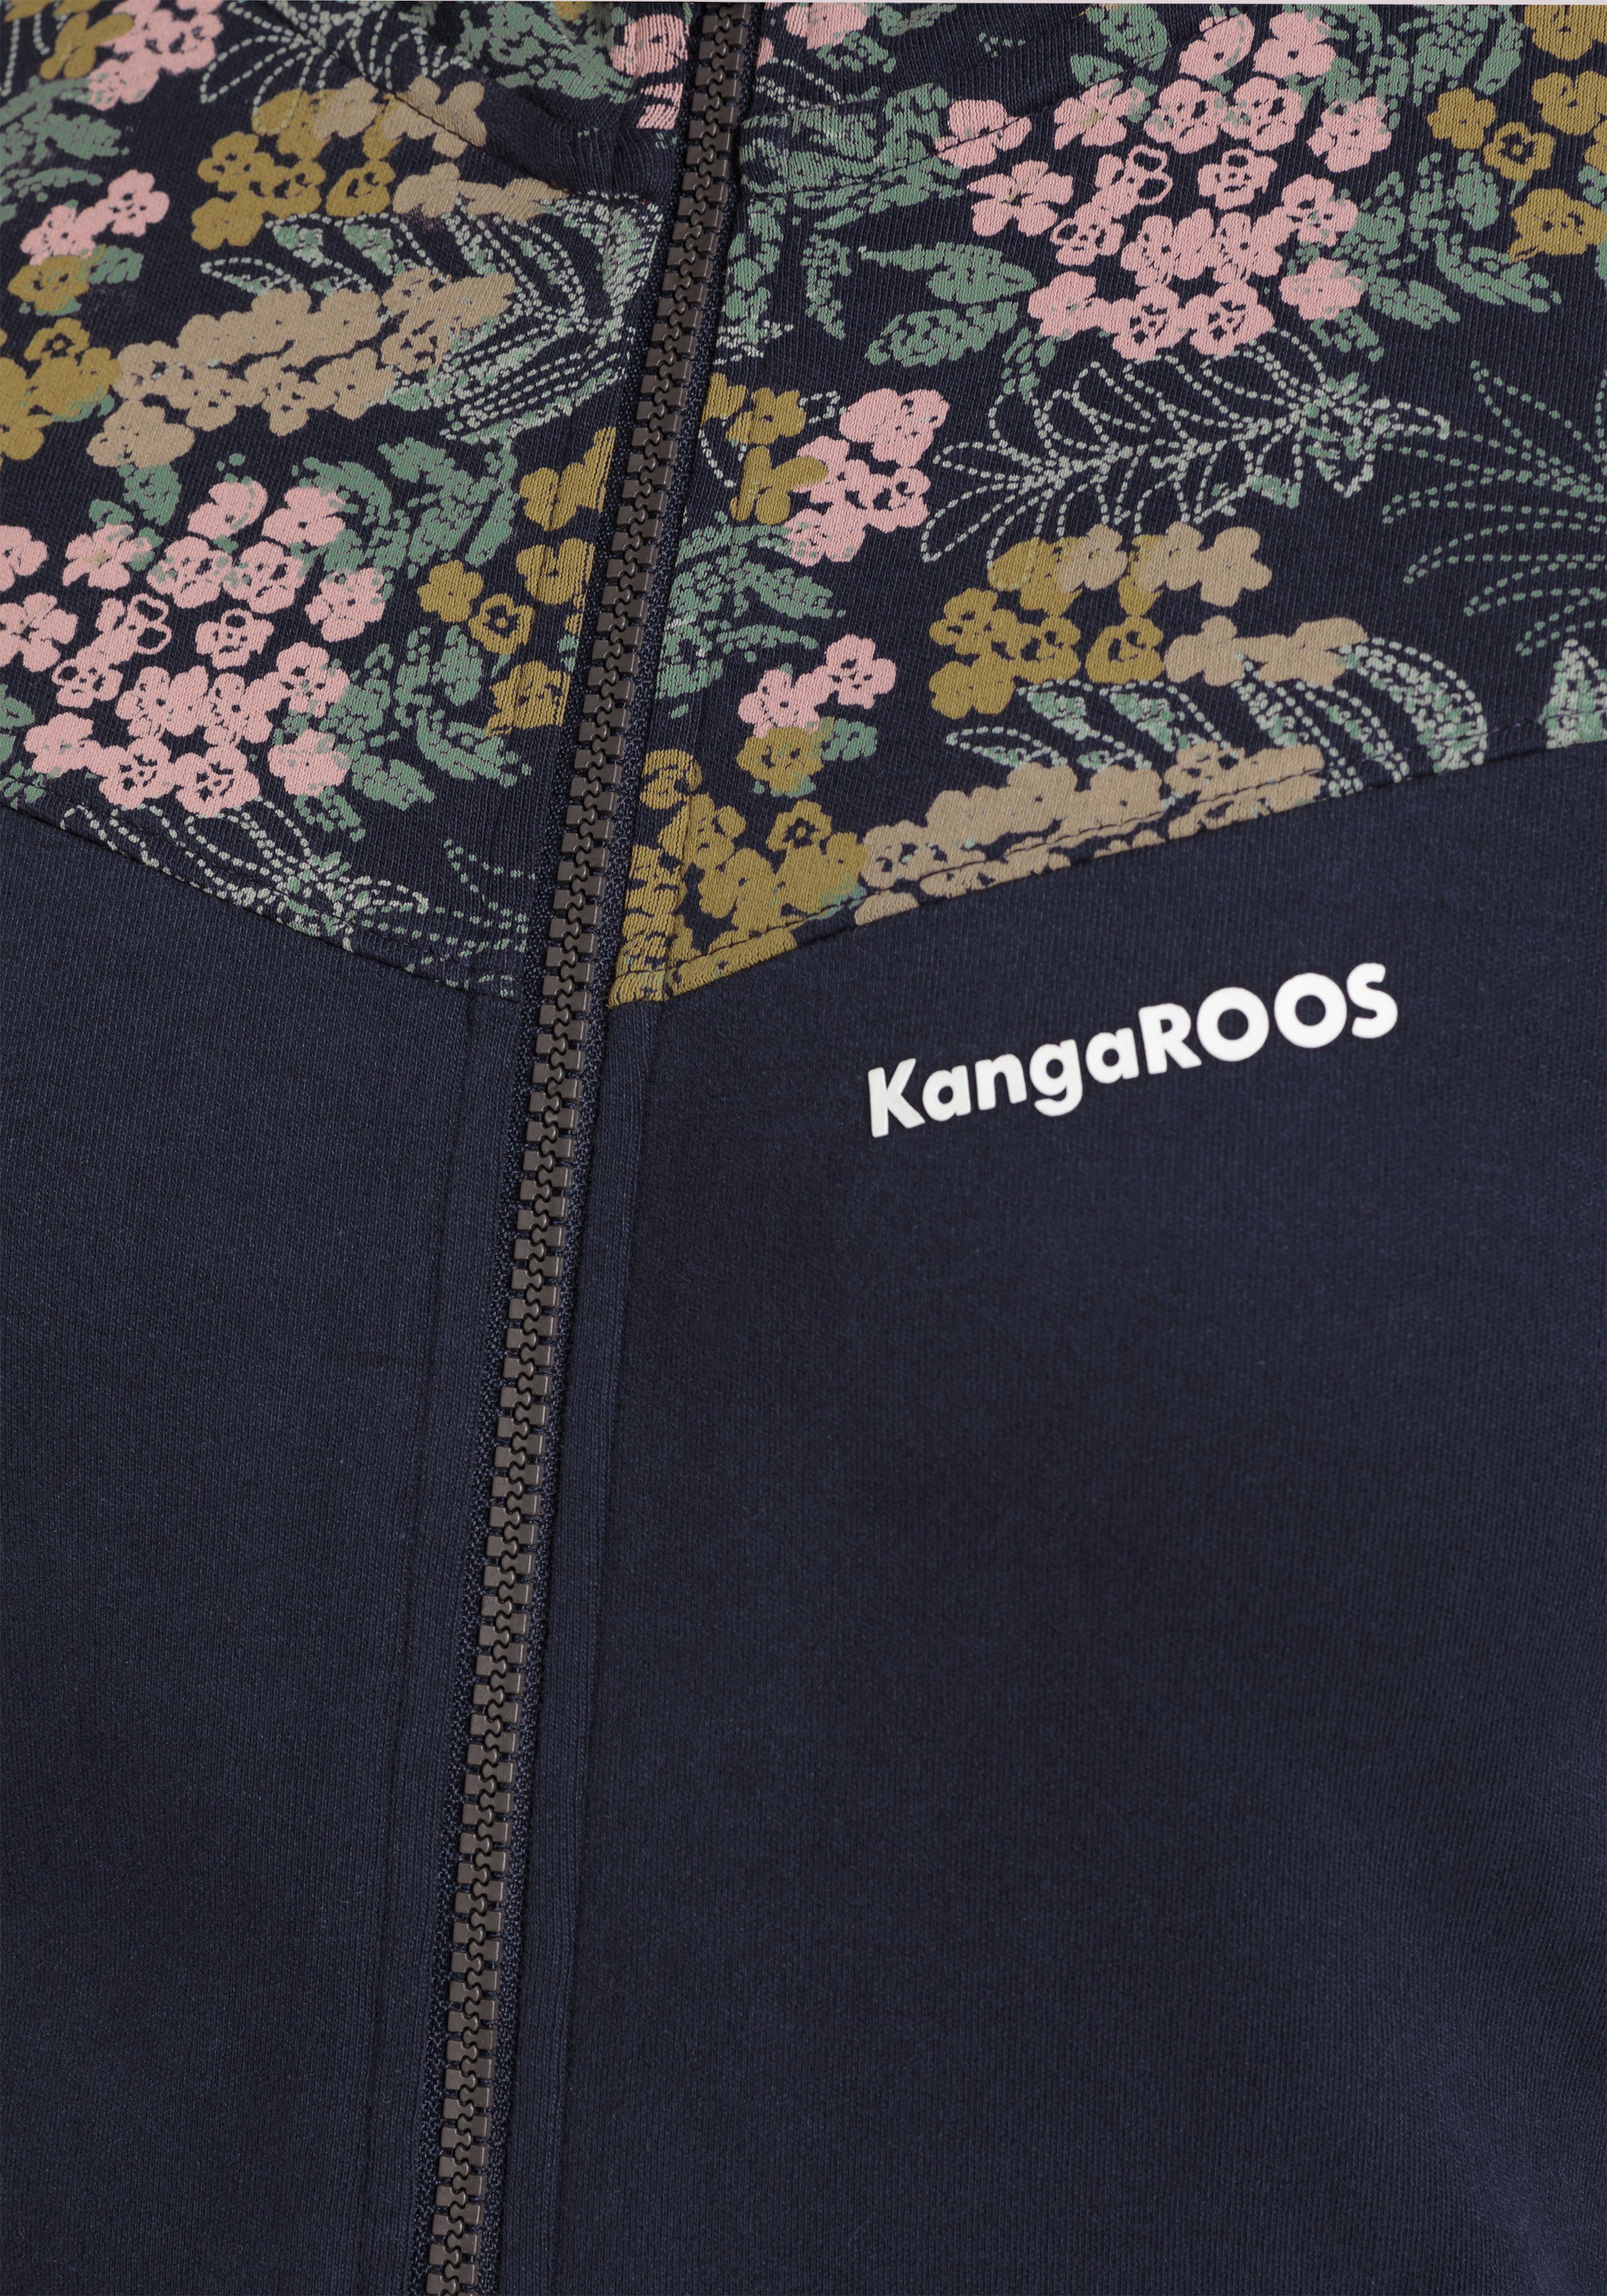 mit KangaROOS Alloverdruck-NEUE-KOLLEKTION Kapuzensweatjacke Blumen